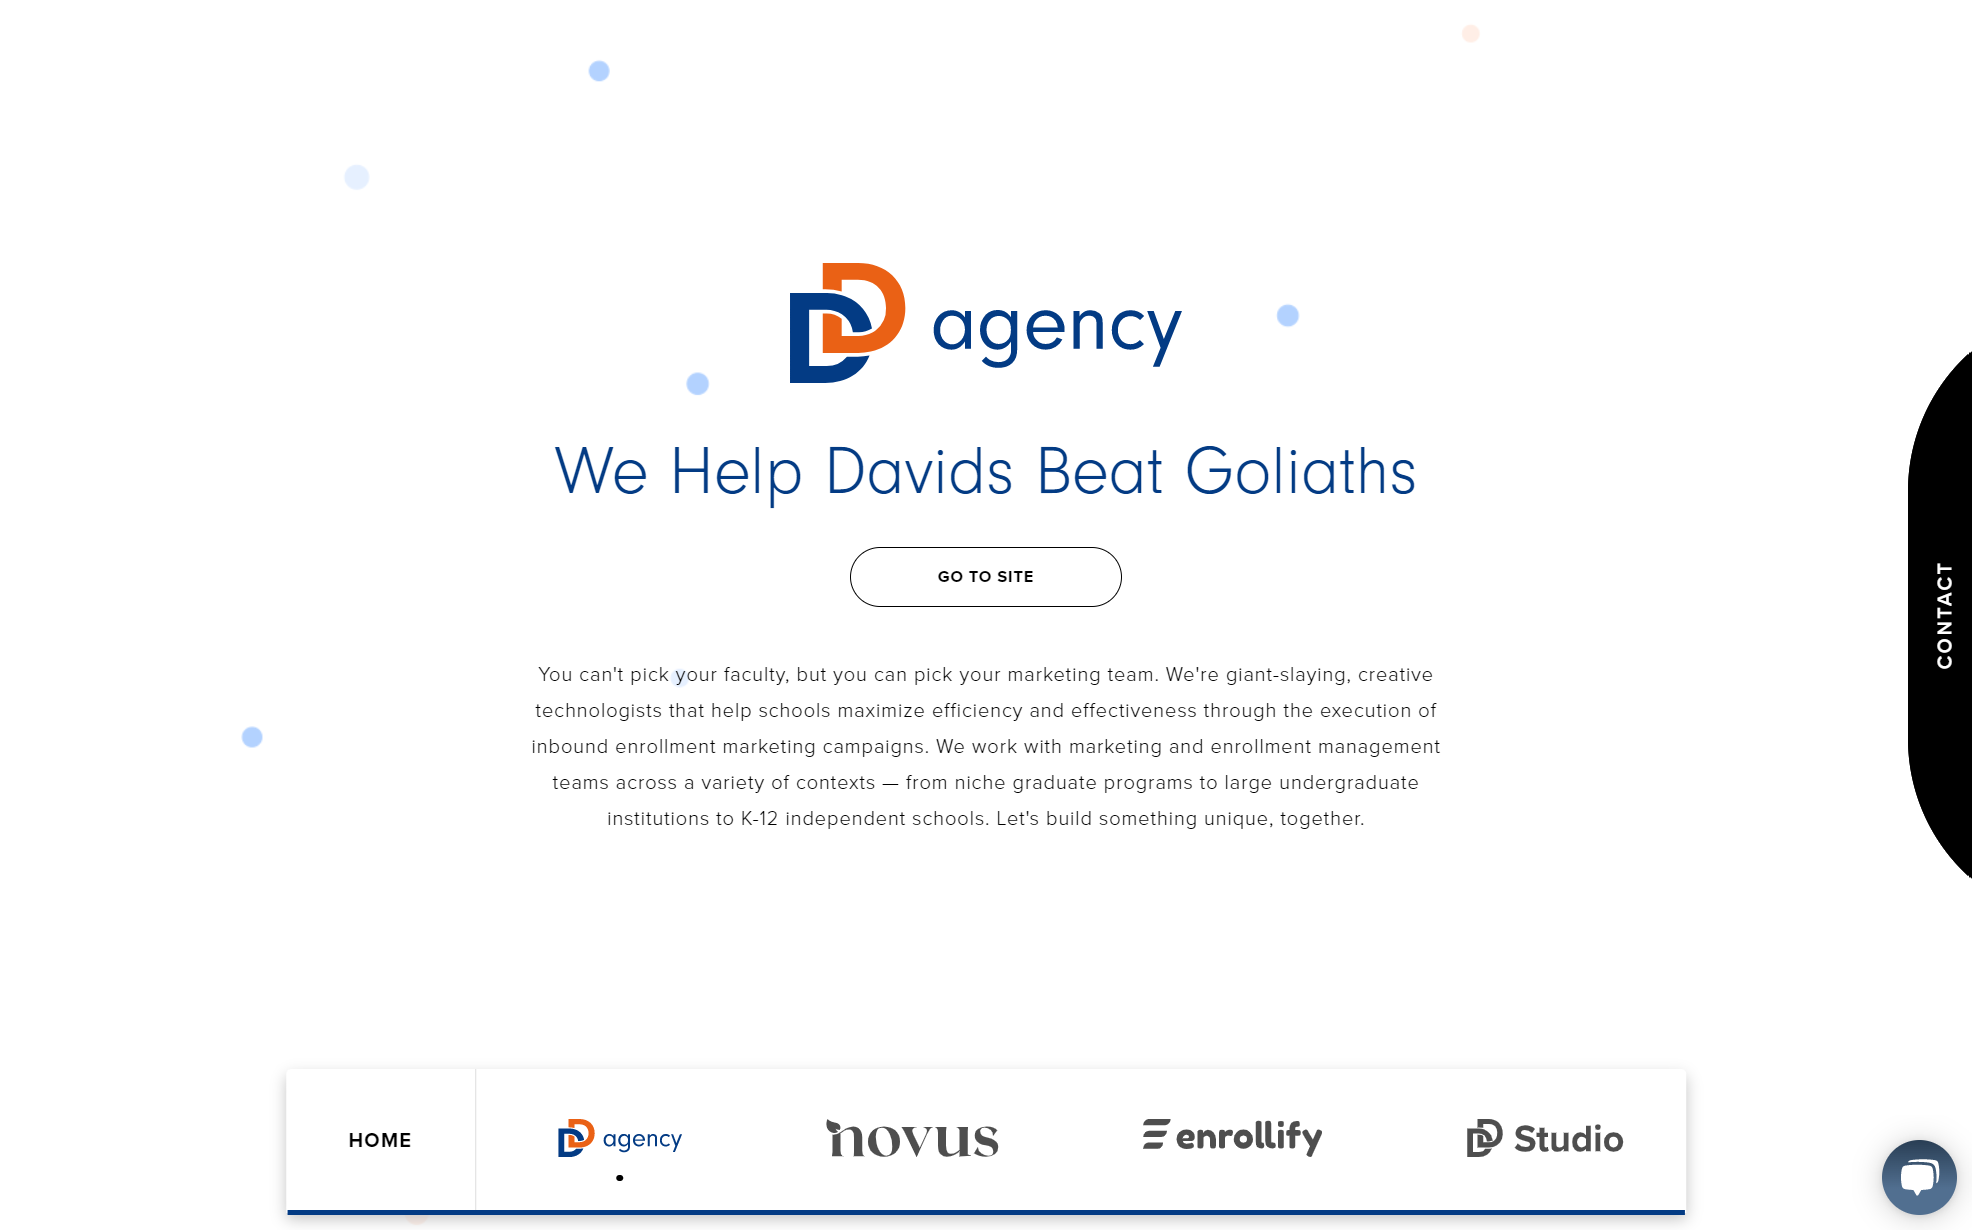 dd-agency